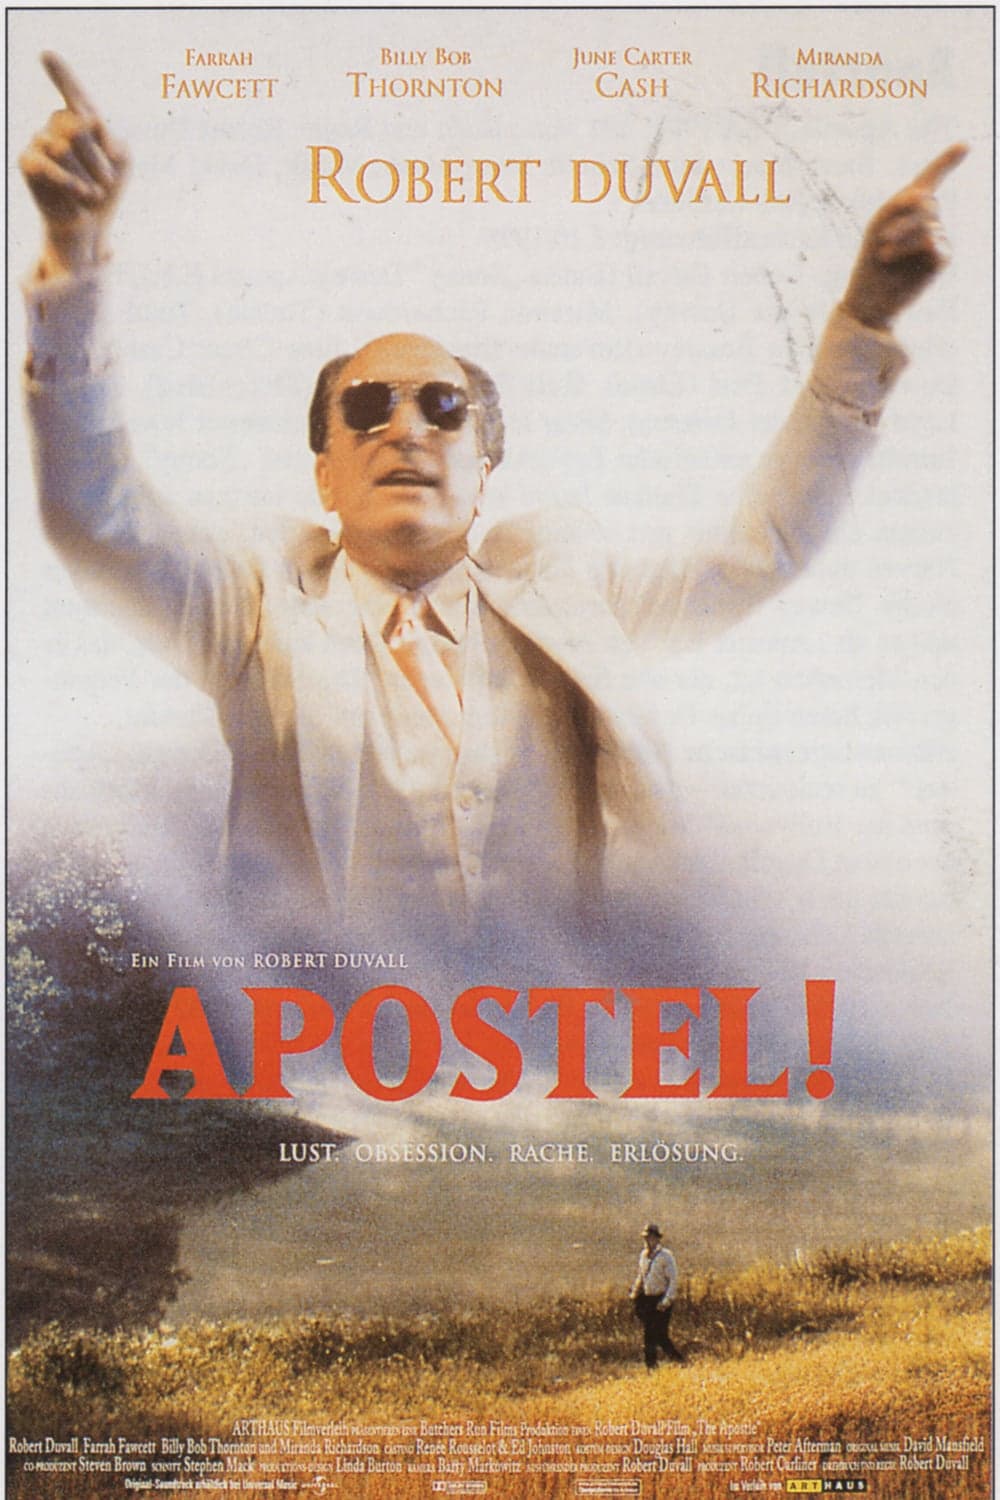 Plakat von "Apostel!"